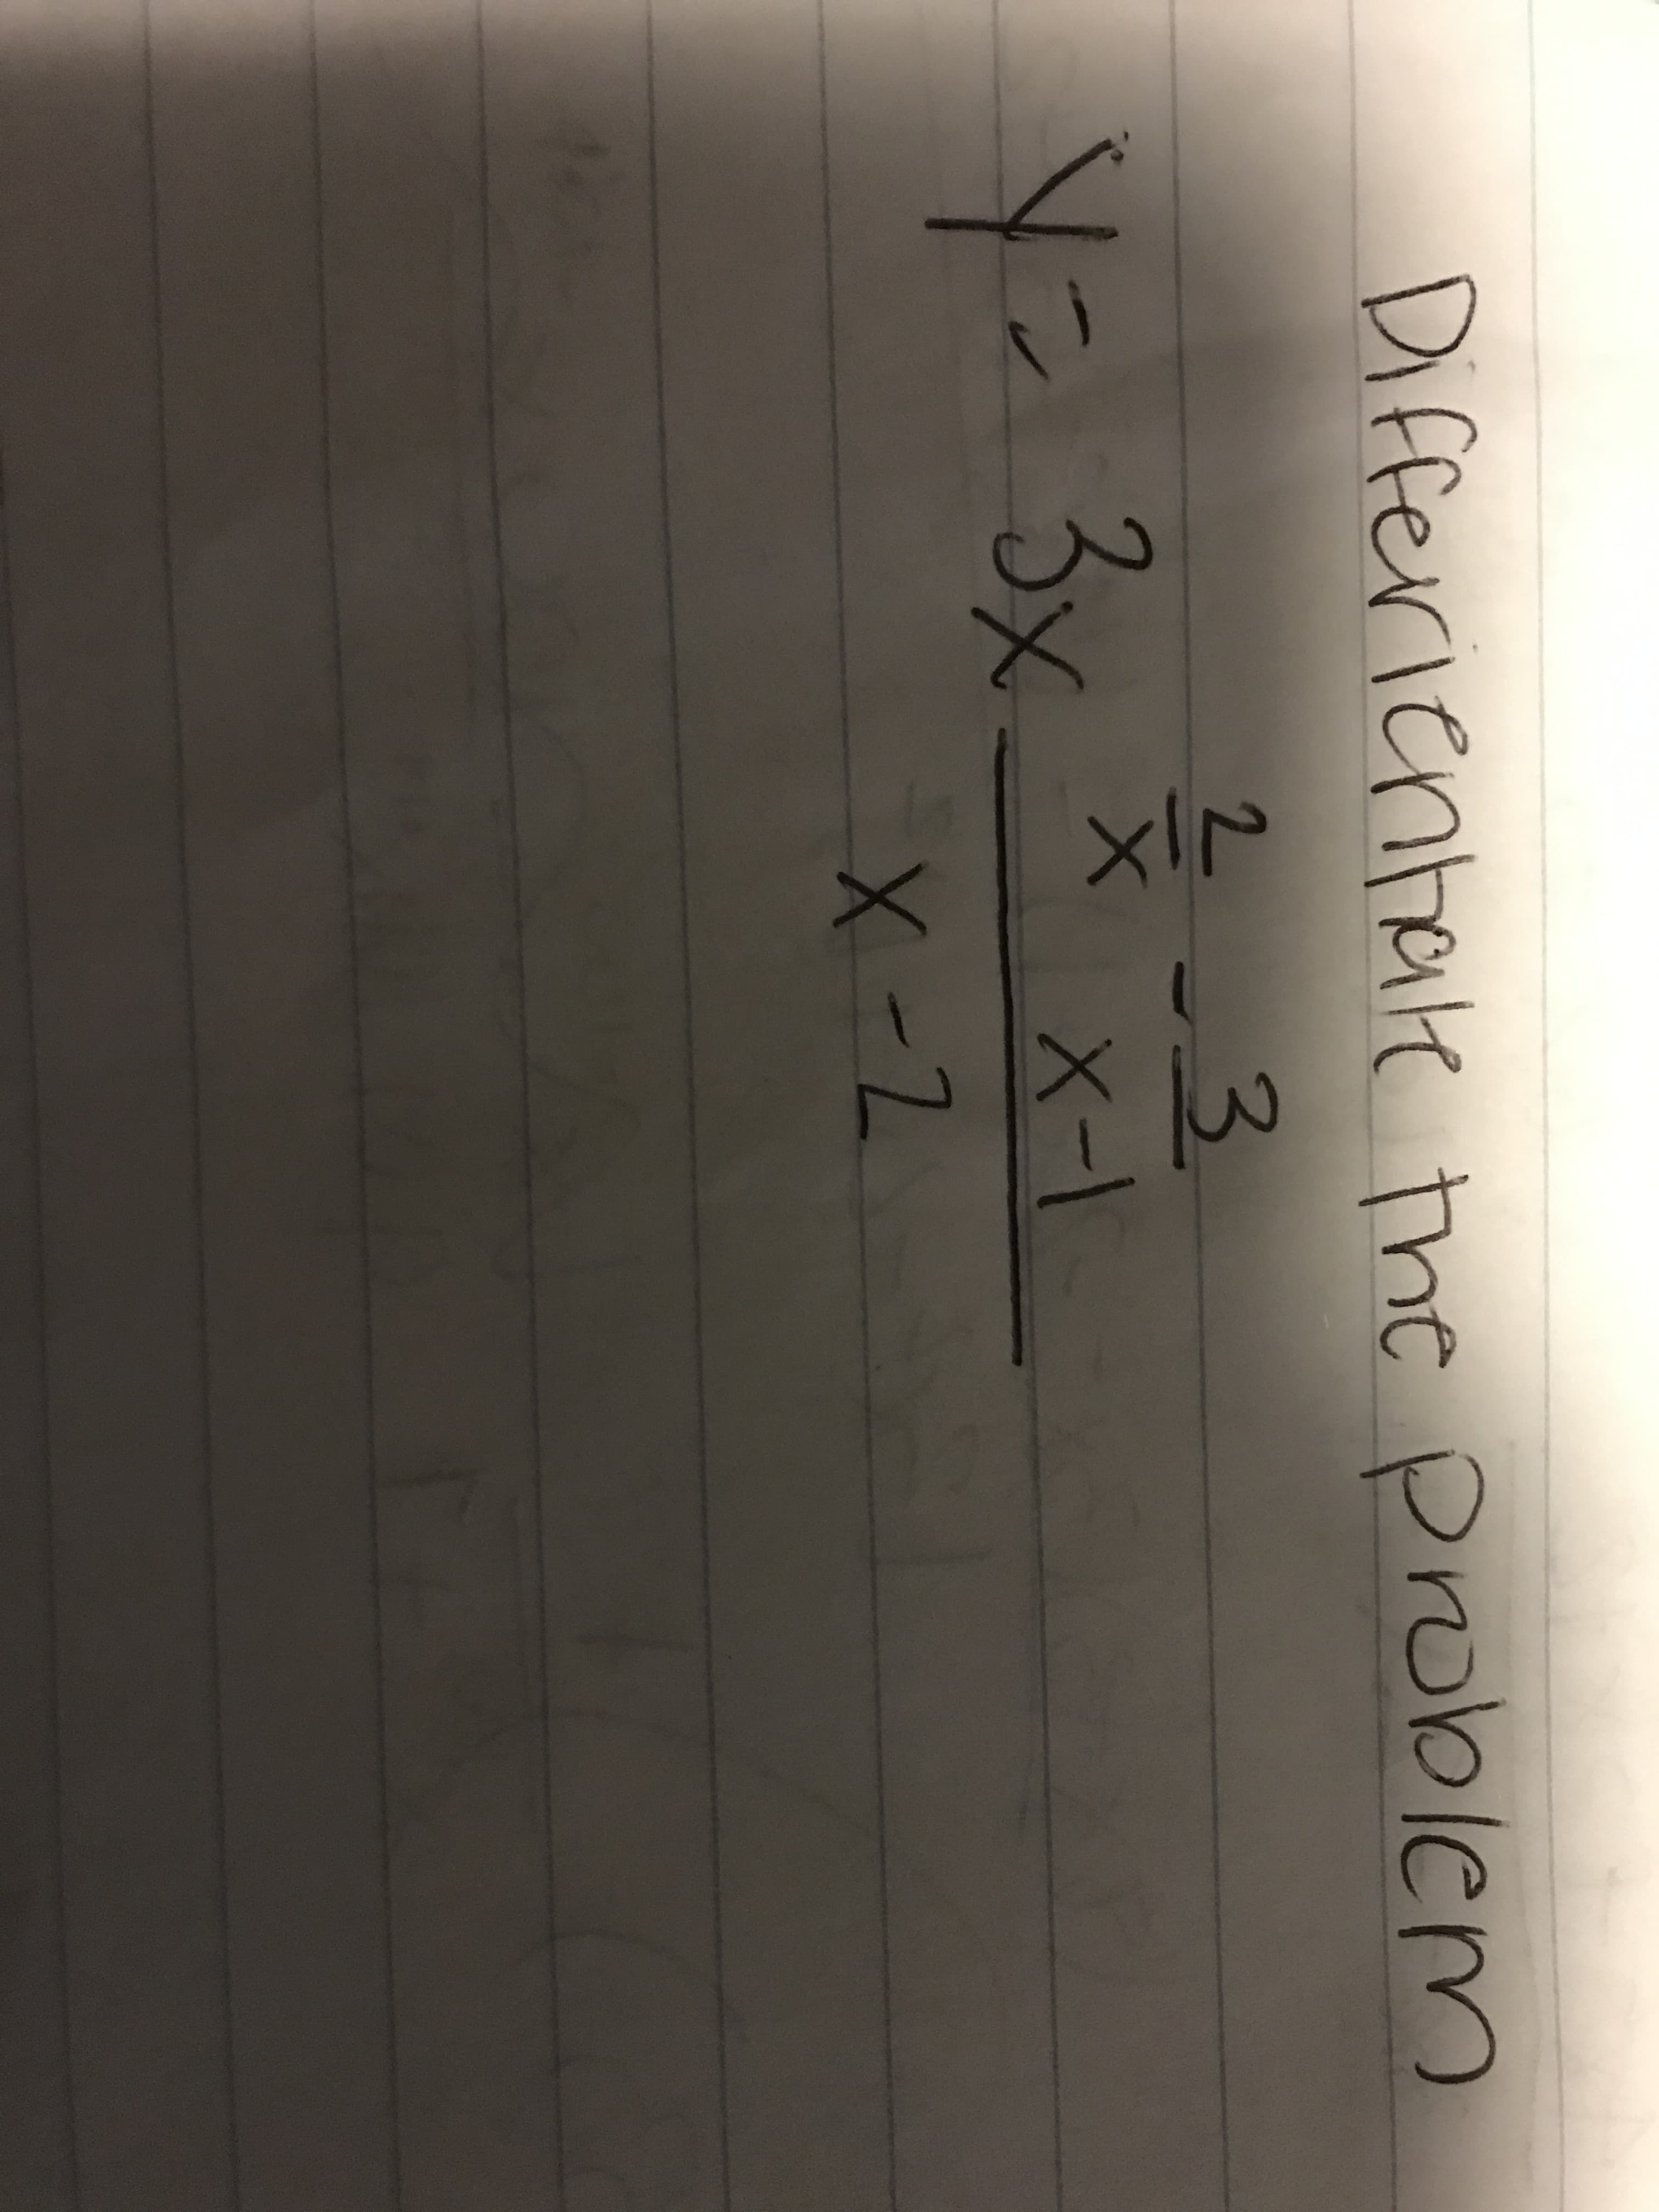 Differientate the problem
2.
3.
X-1
3
Y=3x
X-2
